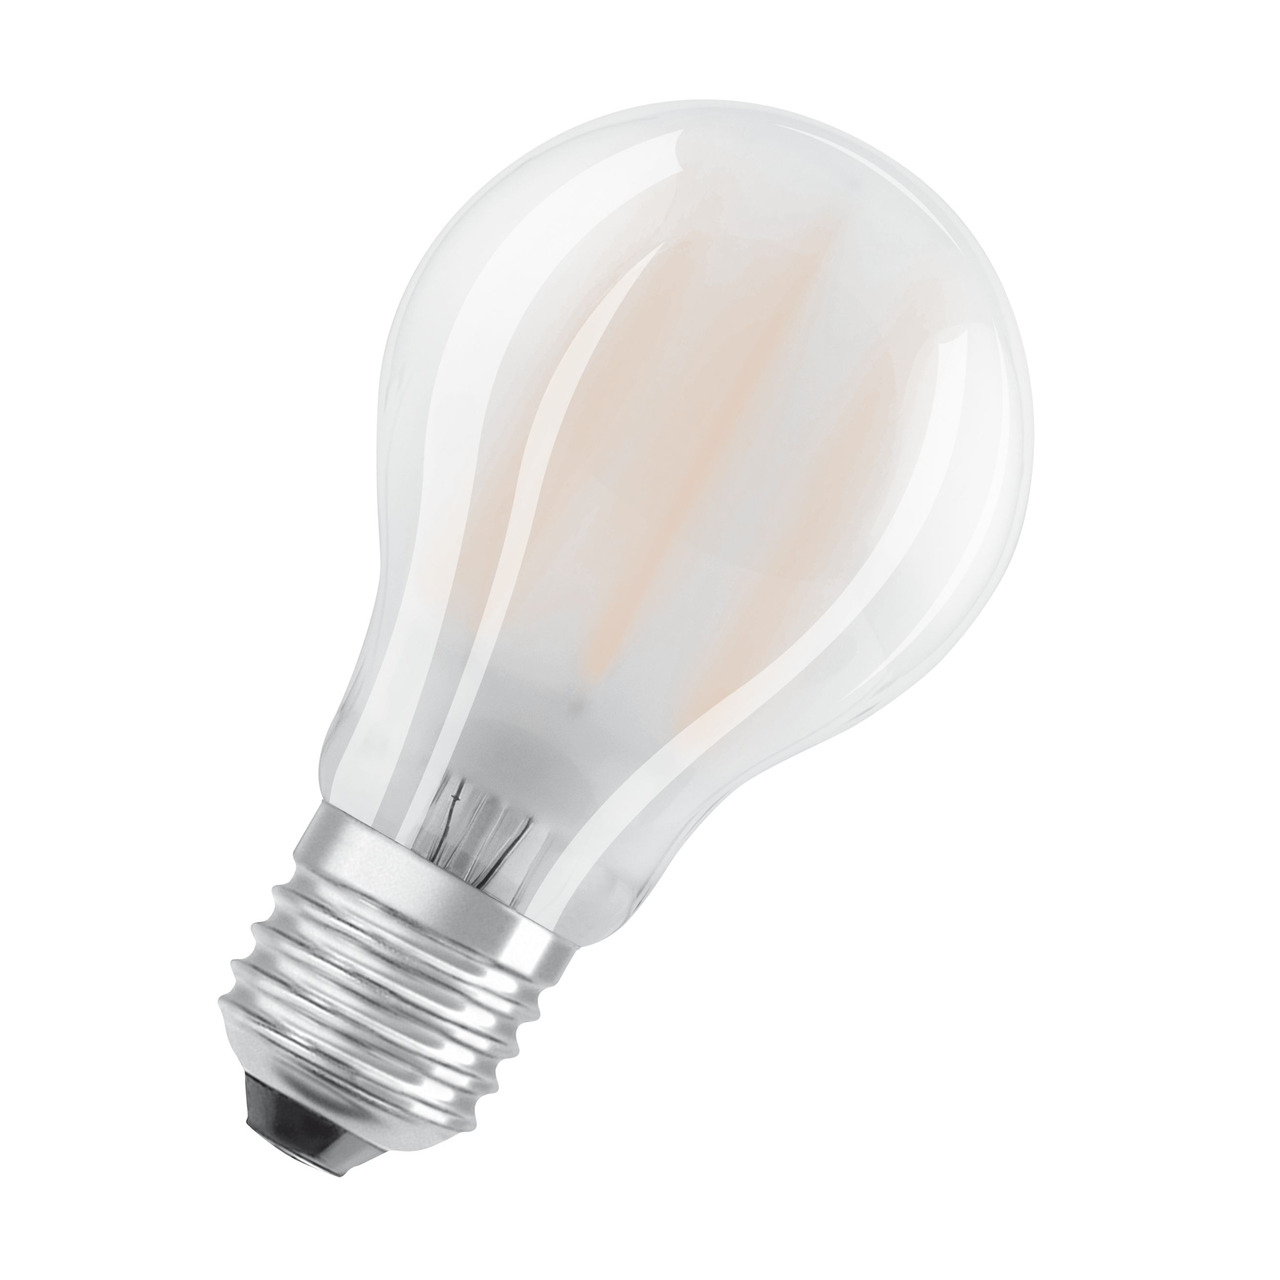 OSRAM 11-W-LED-Lampe A60- E27- 1521 lm- kaltweiss- matt unter Beleuchtung